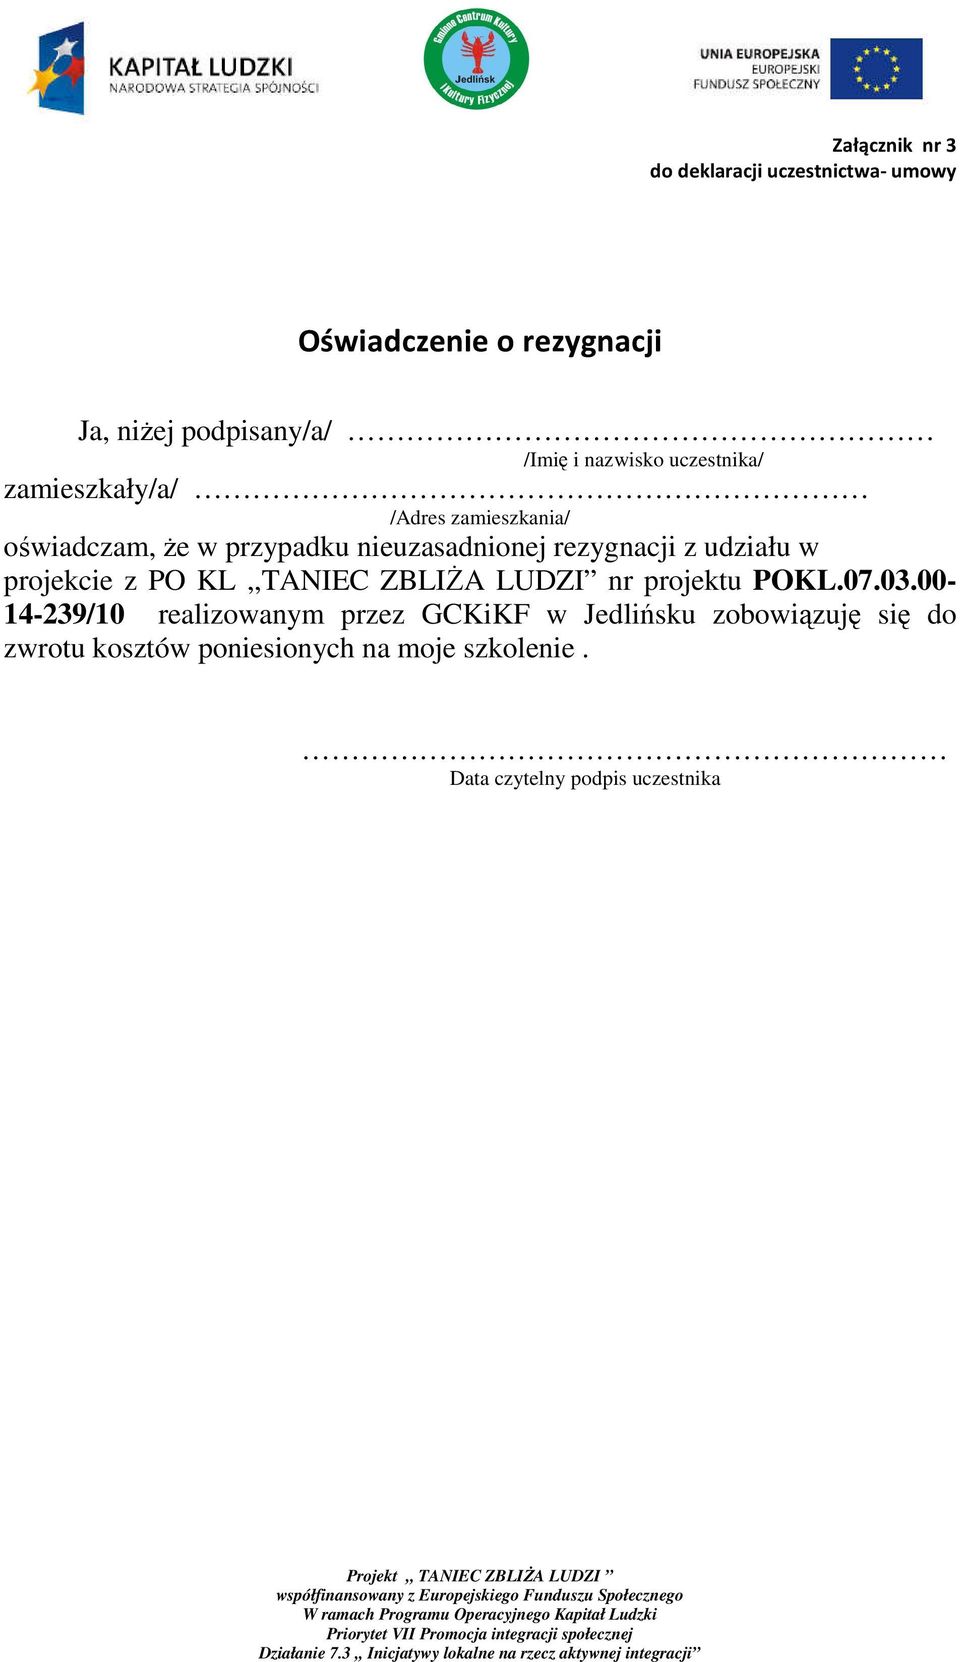 rezygnacji z udziału w projekcie z PO KL,,TANIEC ZBLIŻA LUDZI nr projektu POKL.07.03.